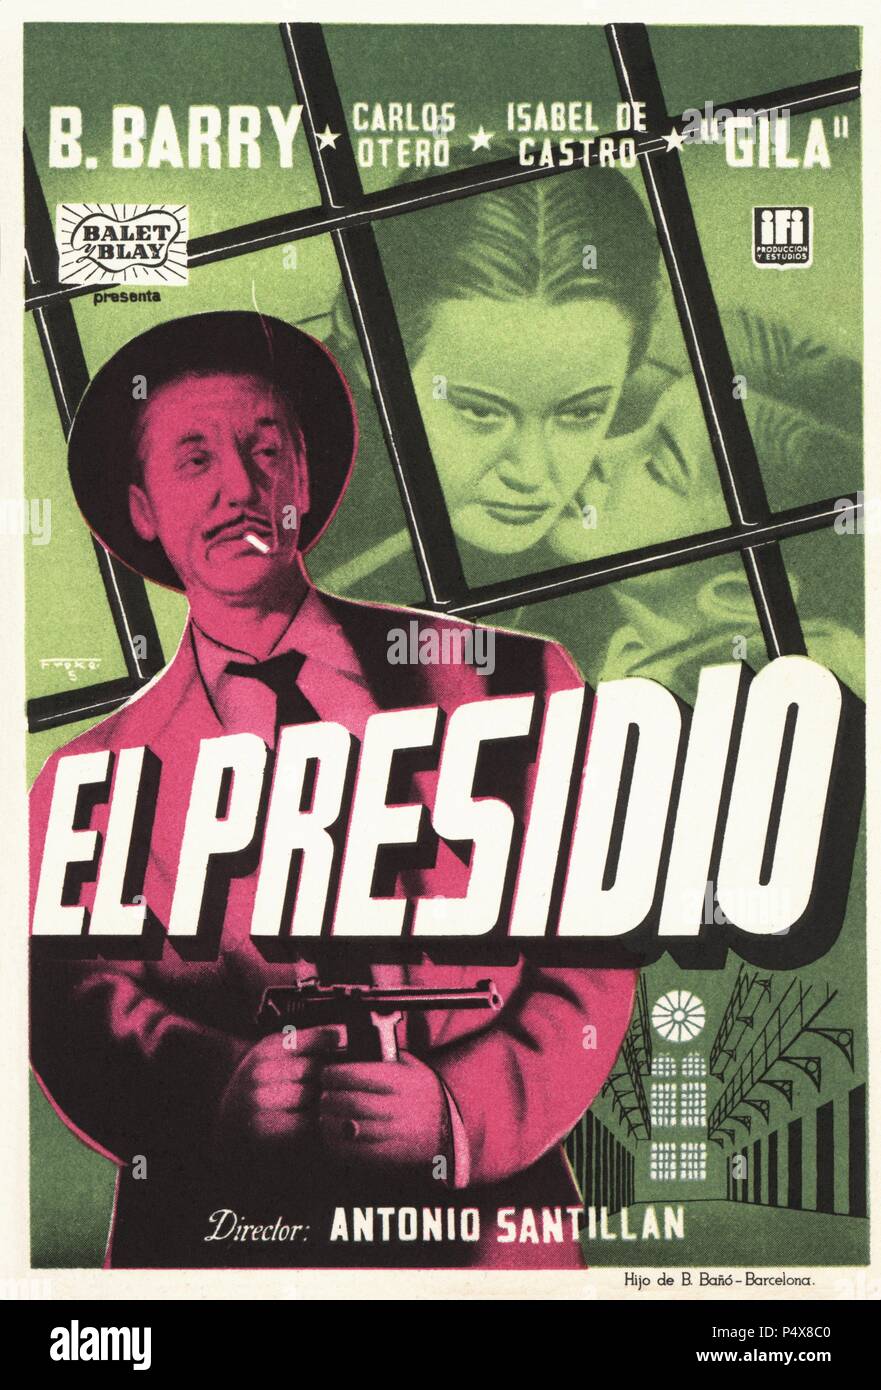 Cartel de la película El Presidio, con Barta Barry, Carlos Otero y Gila, dirigida por Antonio Santillán. España, 1954. Stock Photo